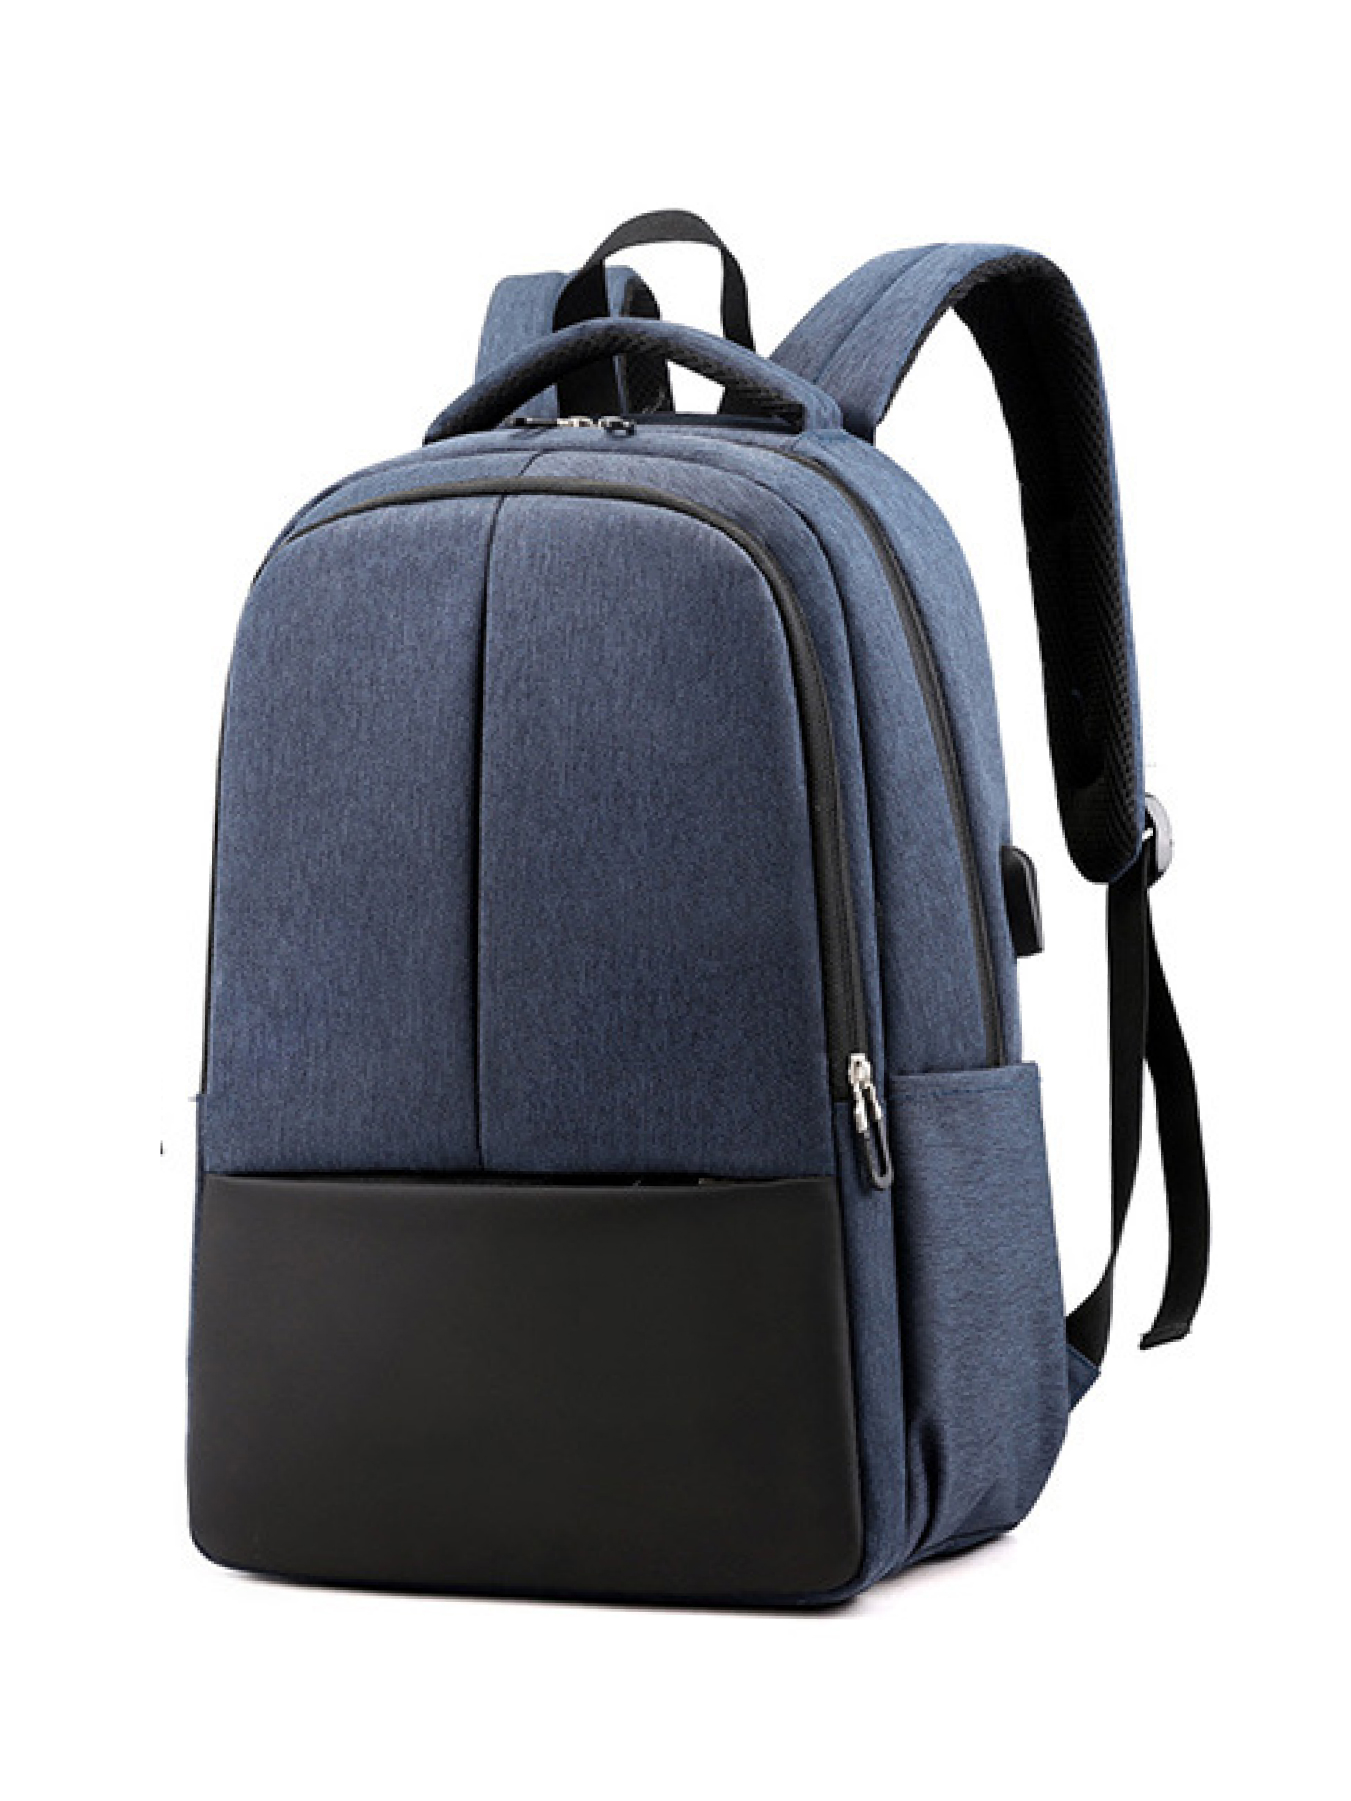 Рюкзак мужской Luxman 521 синий, 43х28х16 см